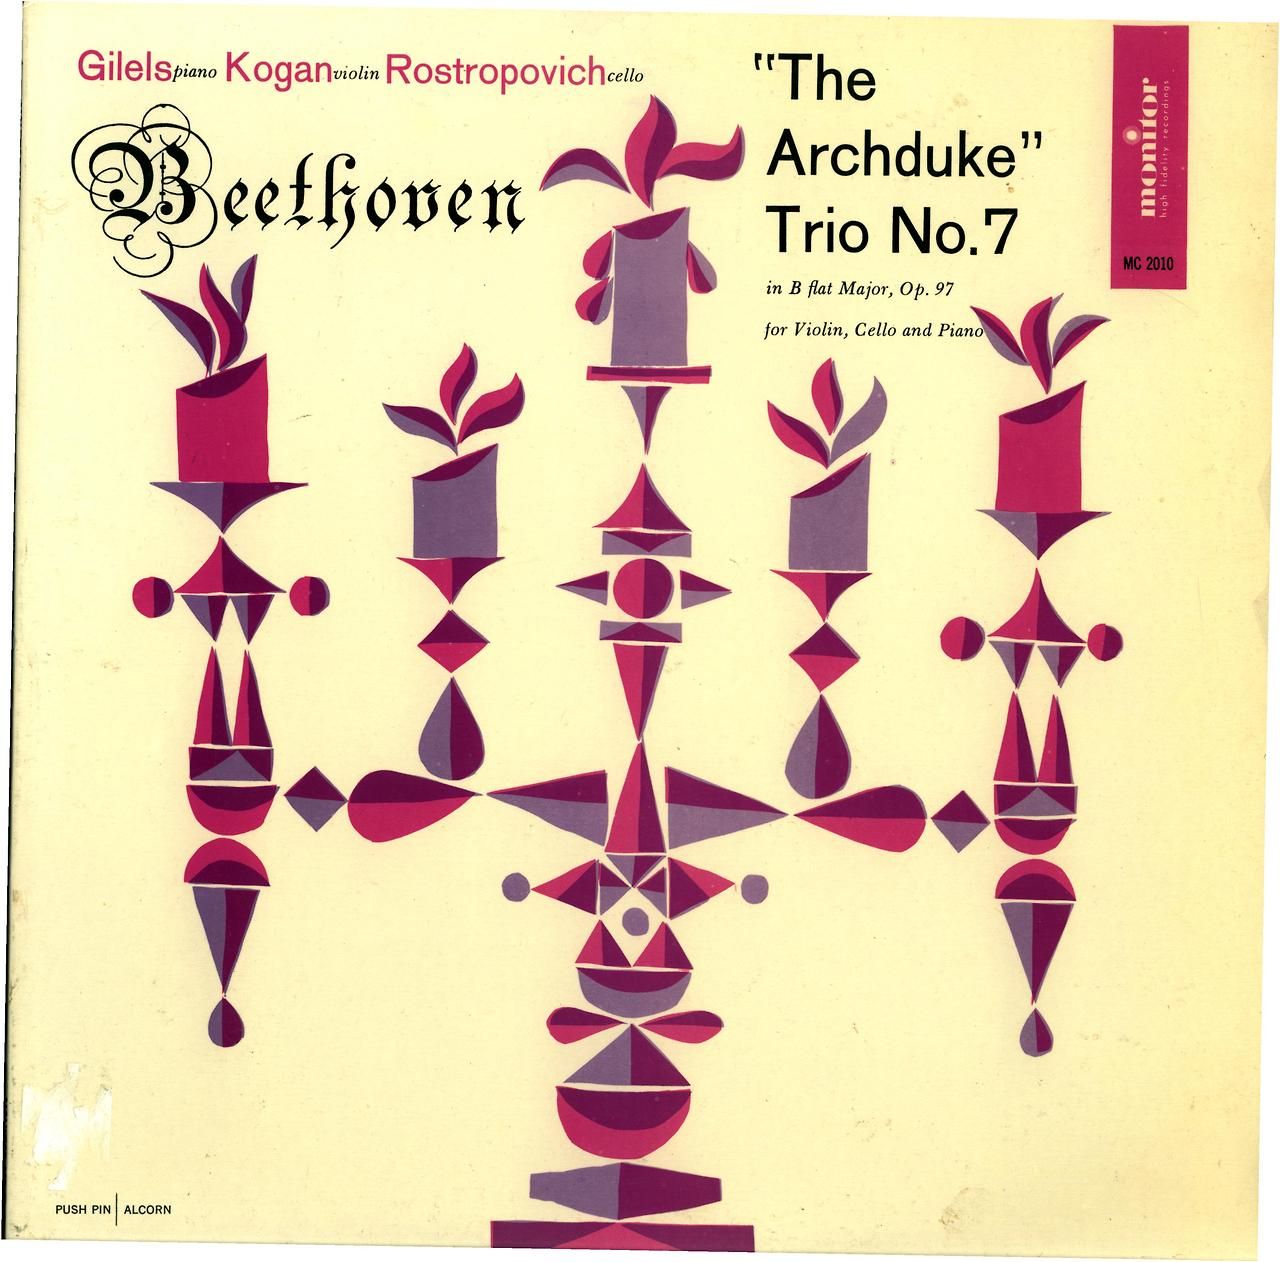 Beethoven- “The Archduke” Trio No. 7 Emil Gilels, piano; Leonid Kogan, violin; Mstislav Rostropovich, cello Monitor MC 2010 (1957) Album art- Pushpin | Alcorn